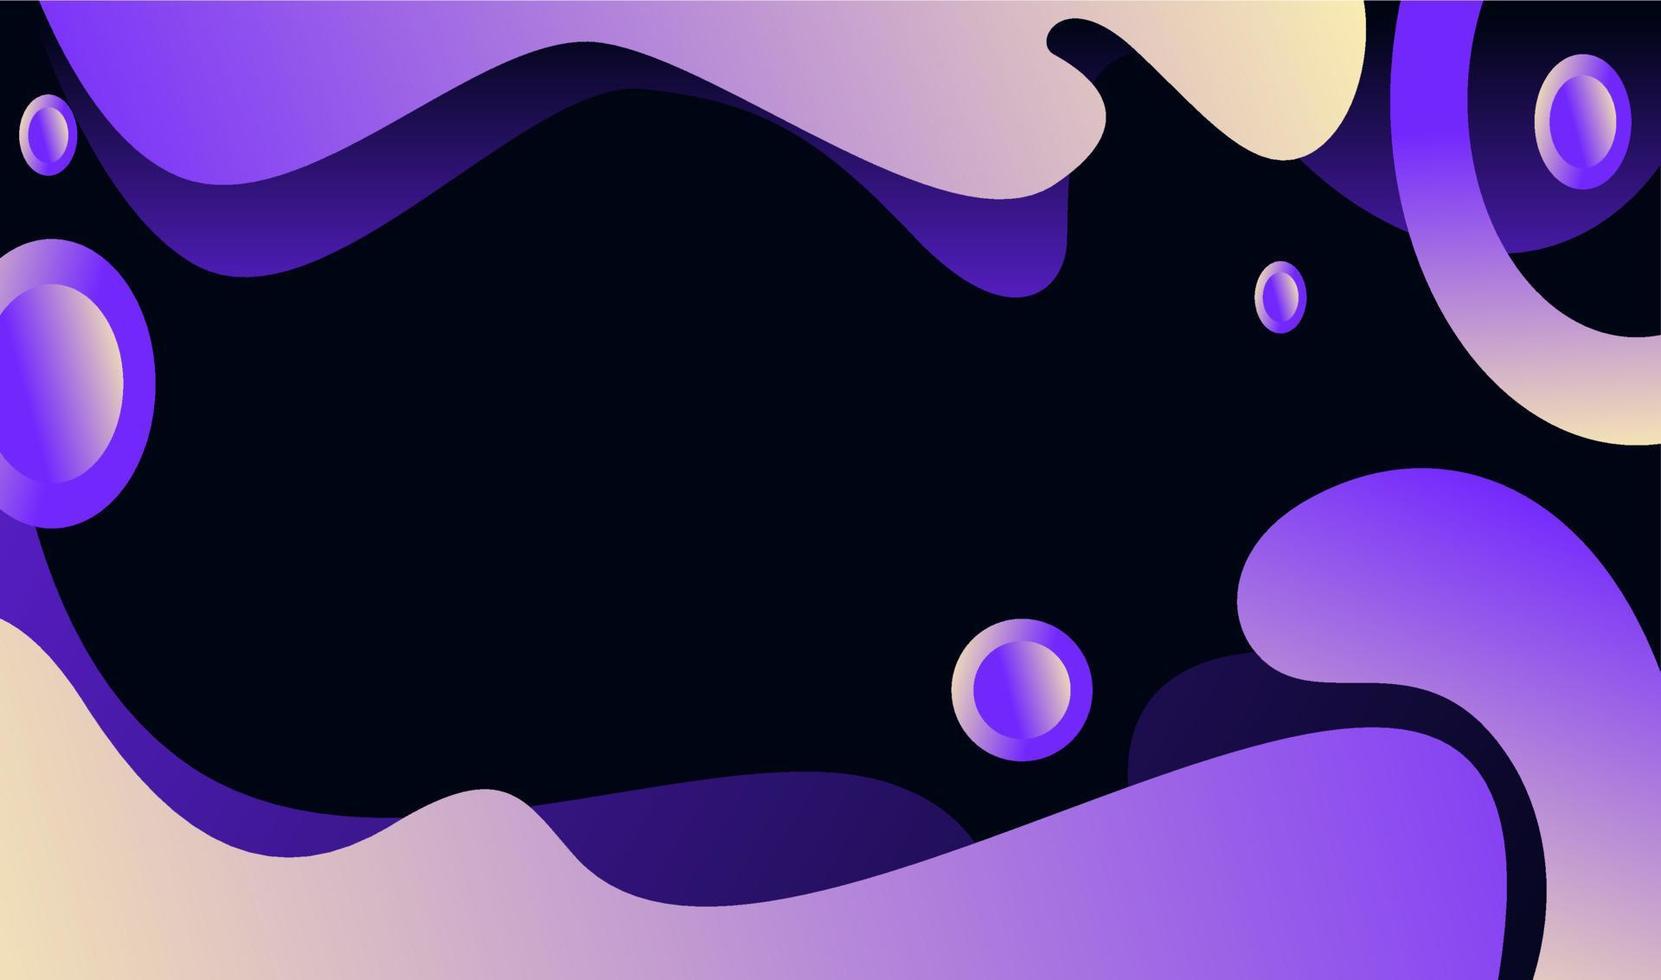 diseño de diseño púrpura de fondo fluido degradado para pancarta o póster. patrón de vector fluido fresco con formas púrpuras en movimiento